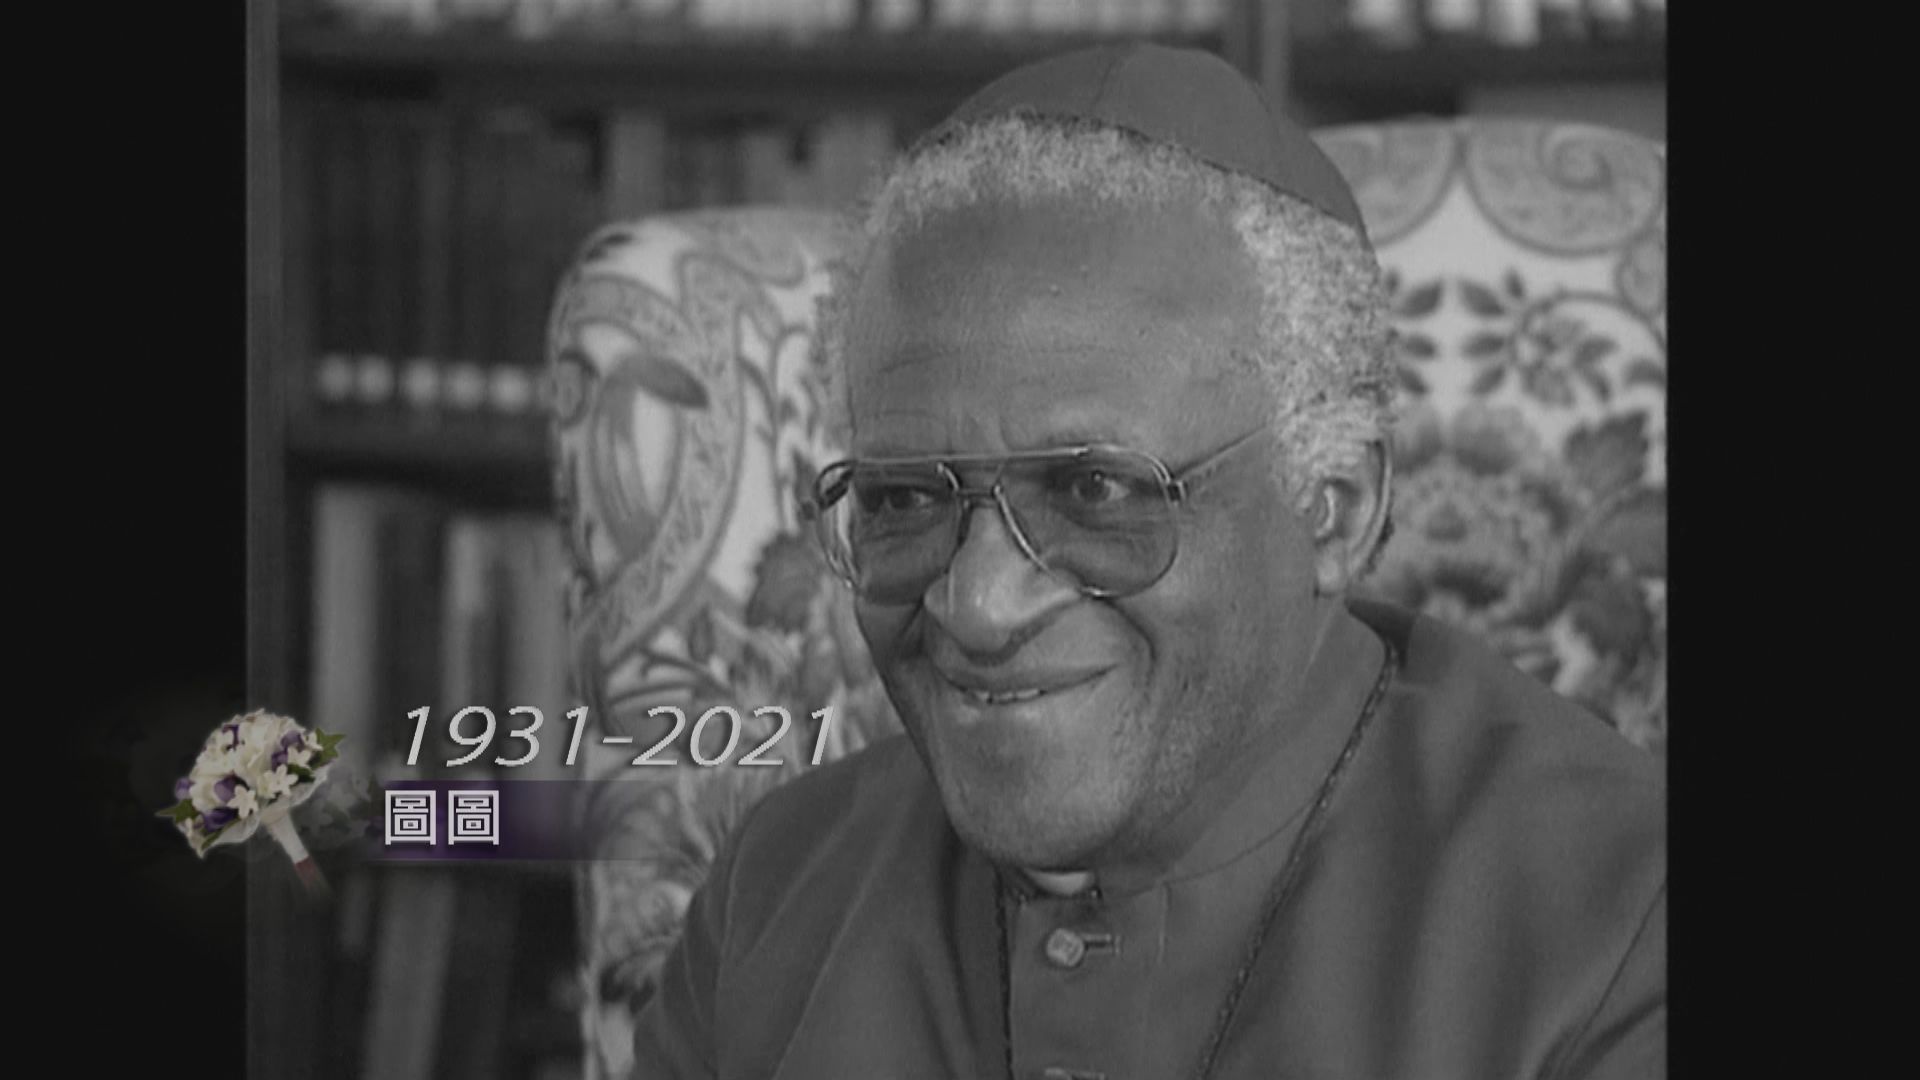 和平獎得主南非聖公會榮休大主教圖圖逝世　享年90歲